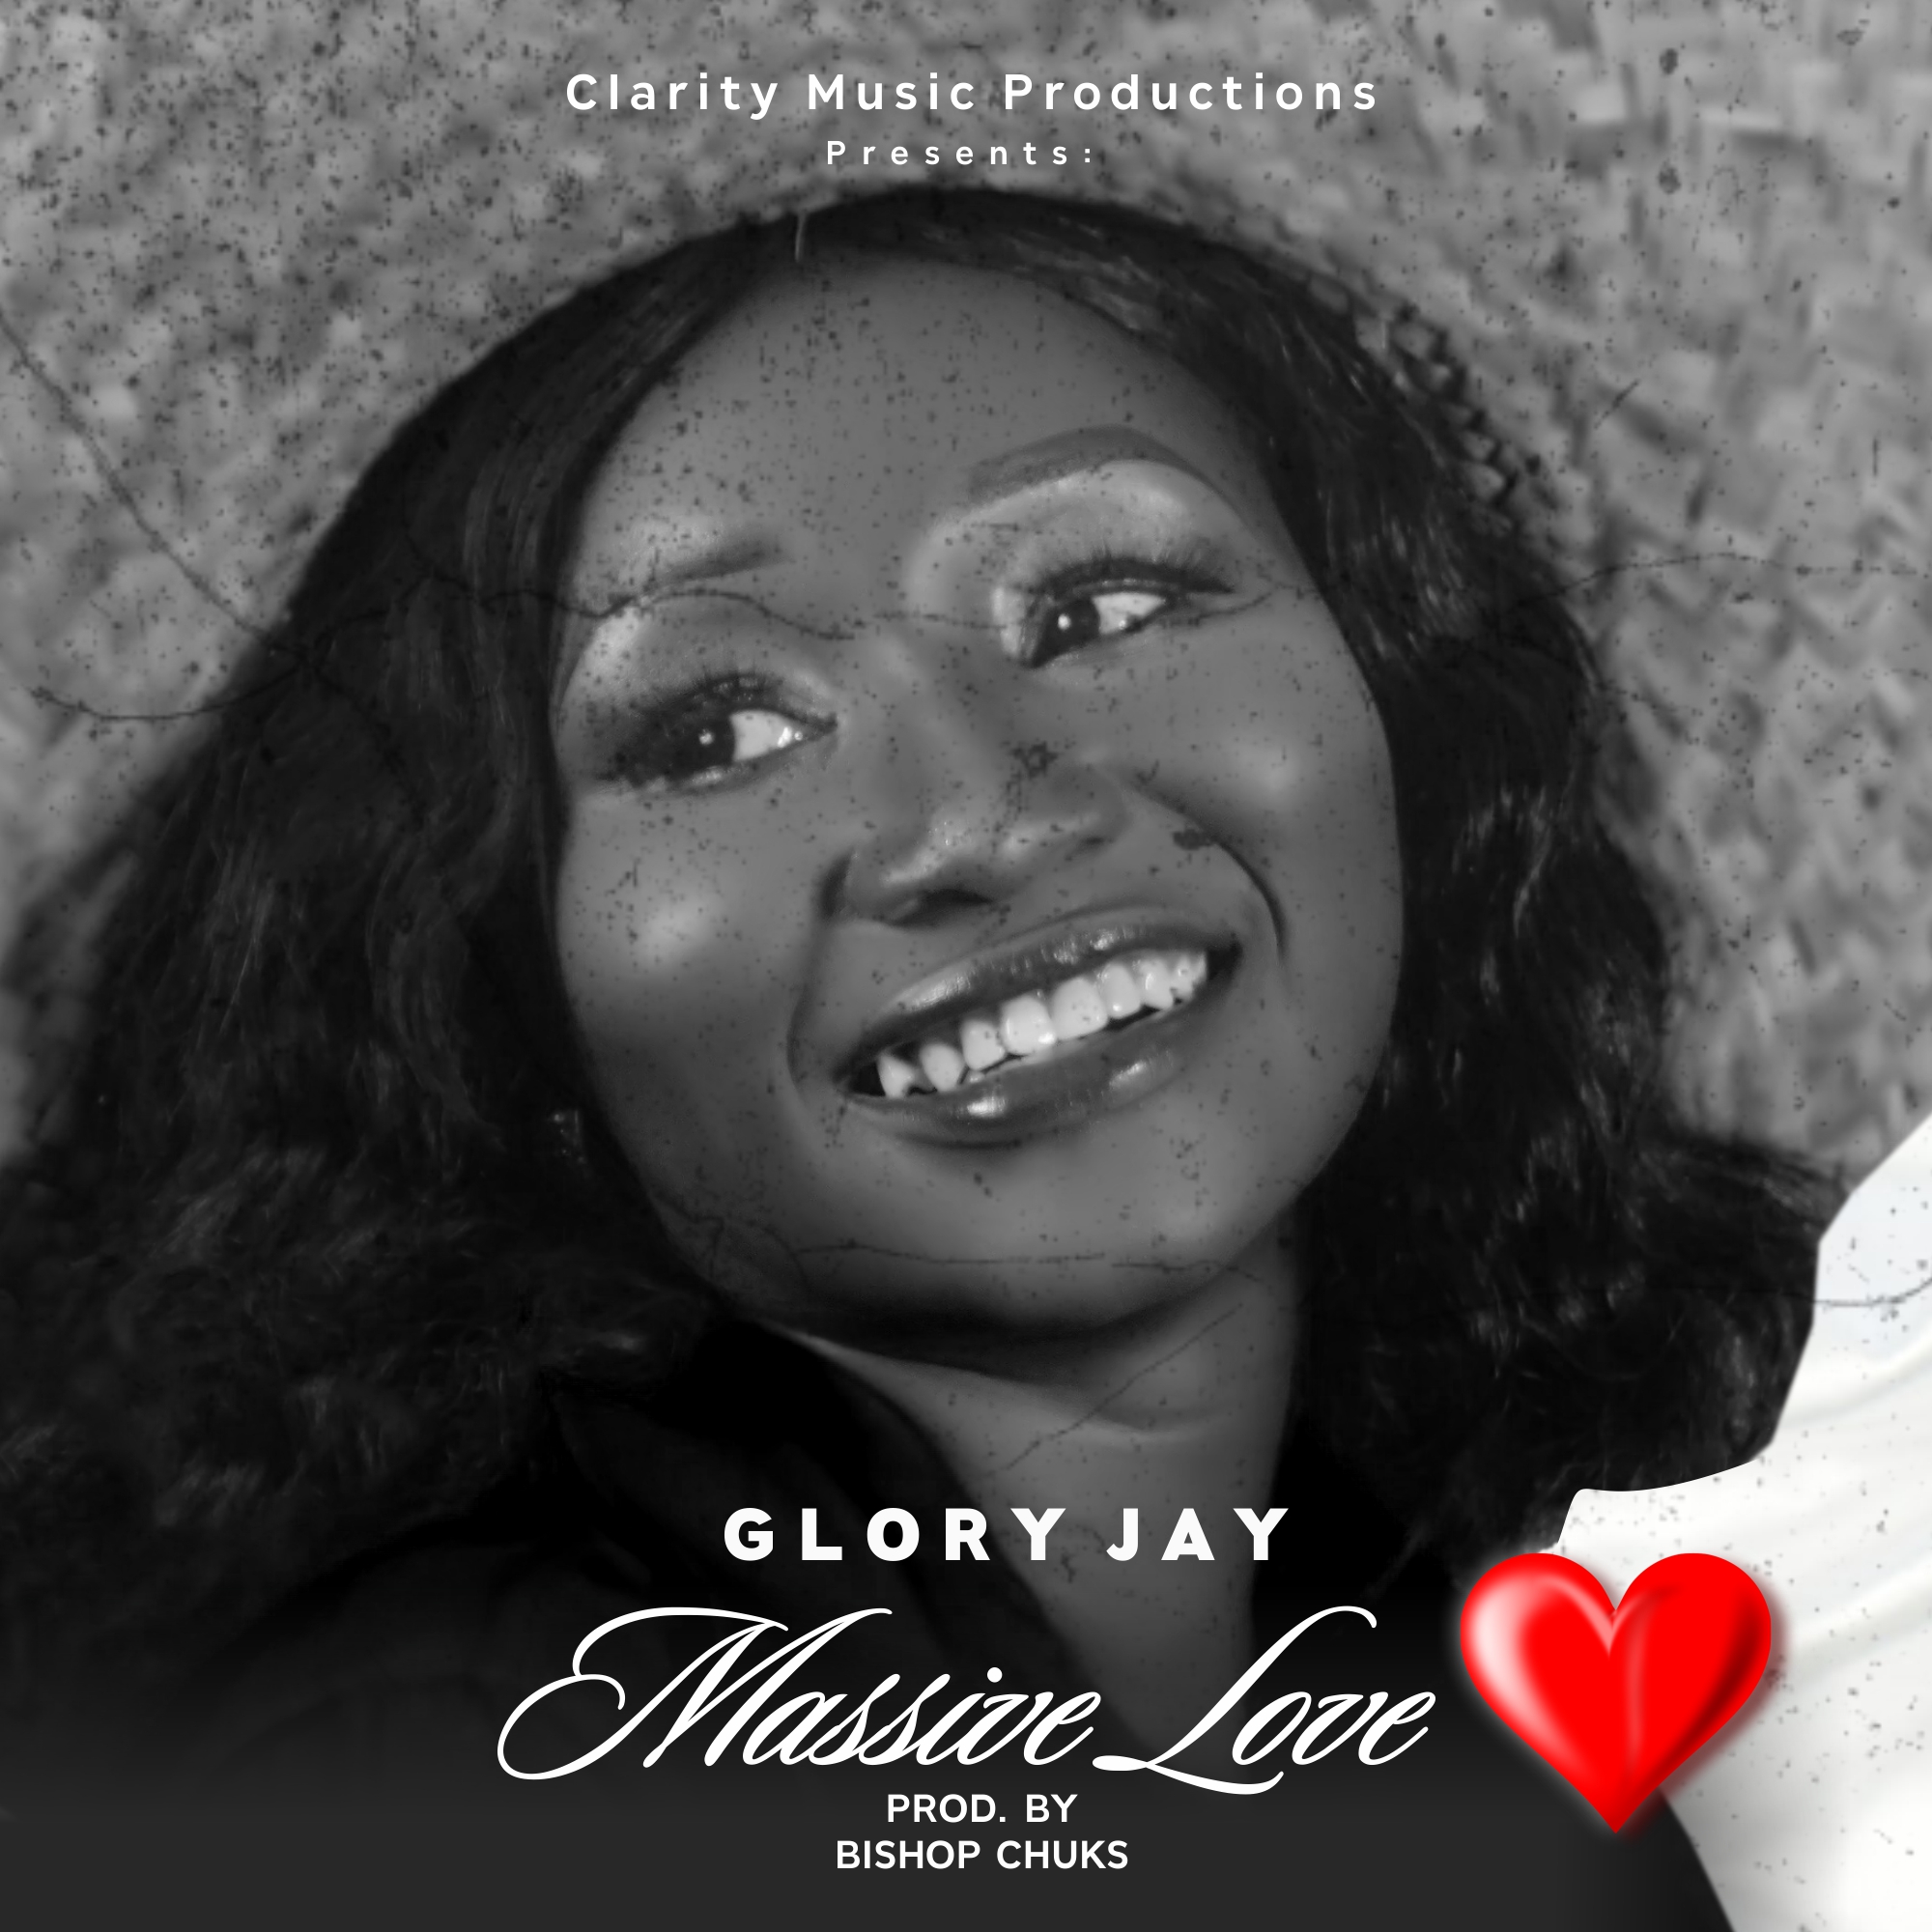 Glory Jay - Massive Love